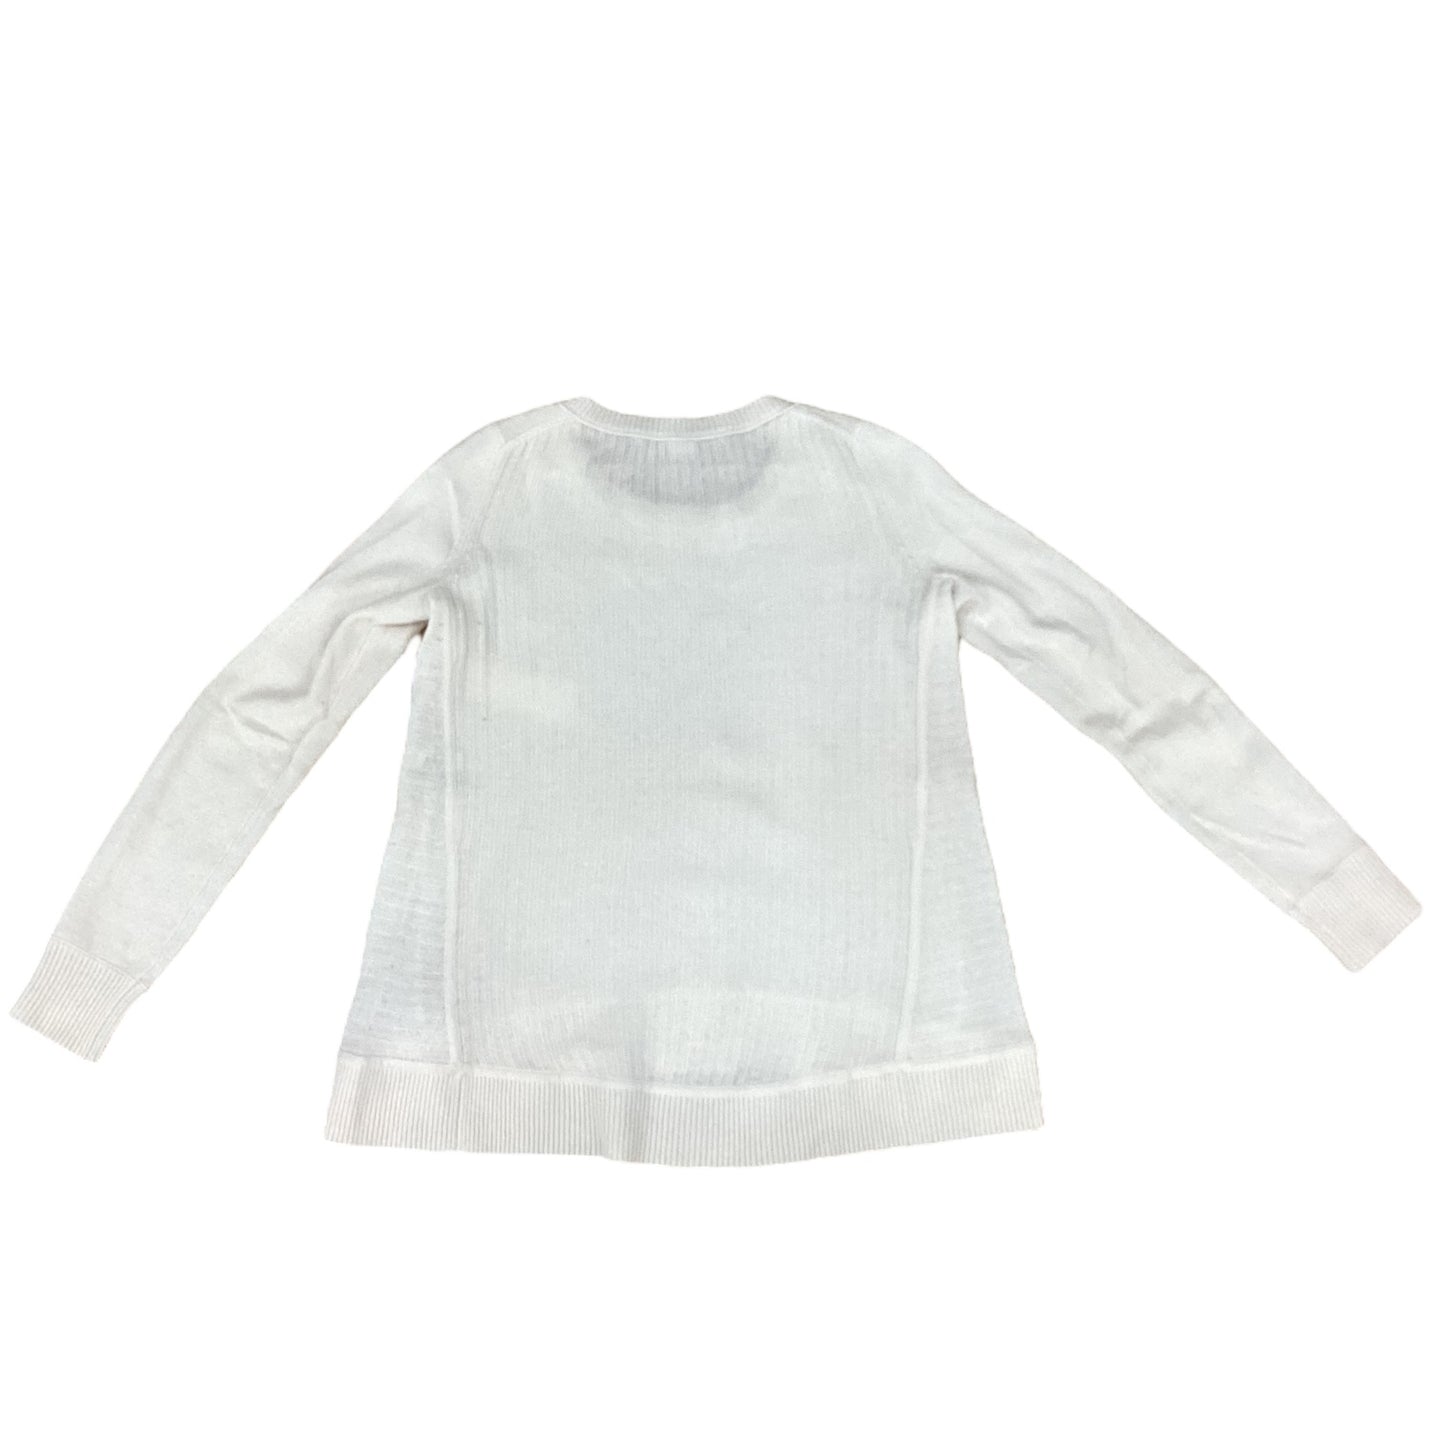 Sweater By Diane Von Furstenberg  Size: S